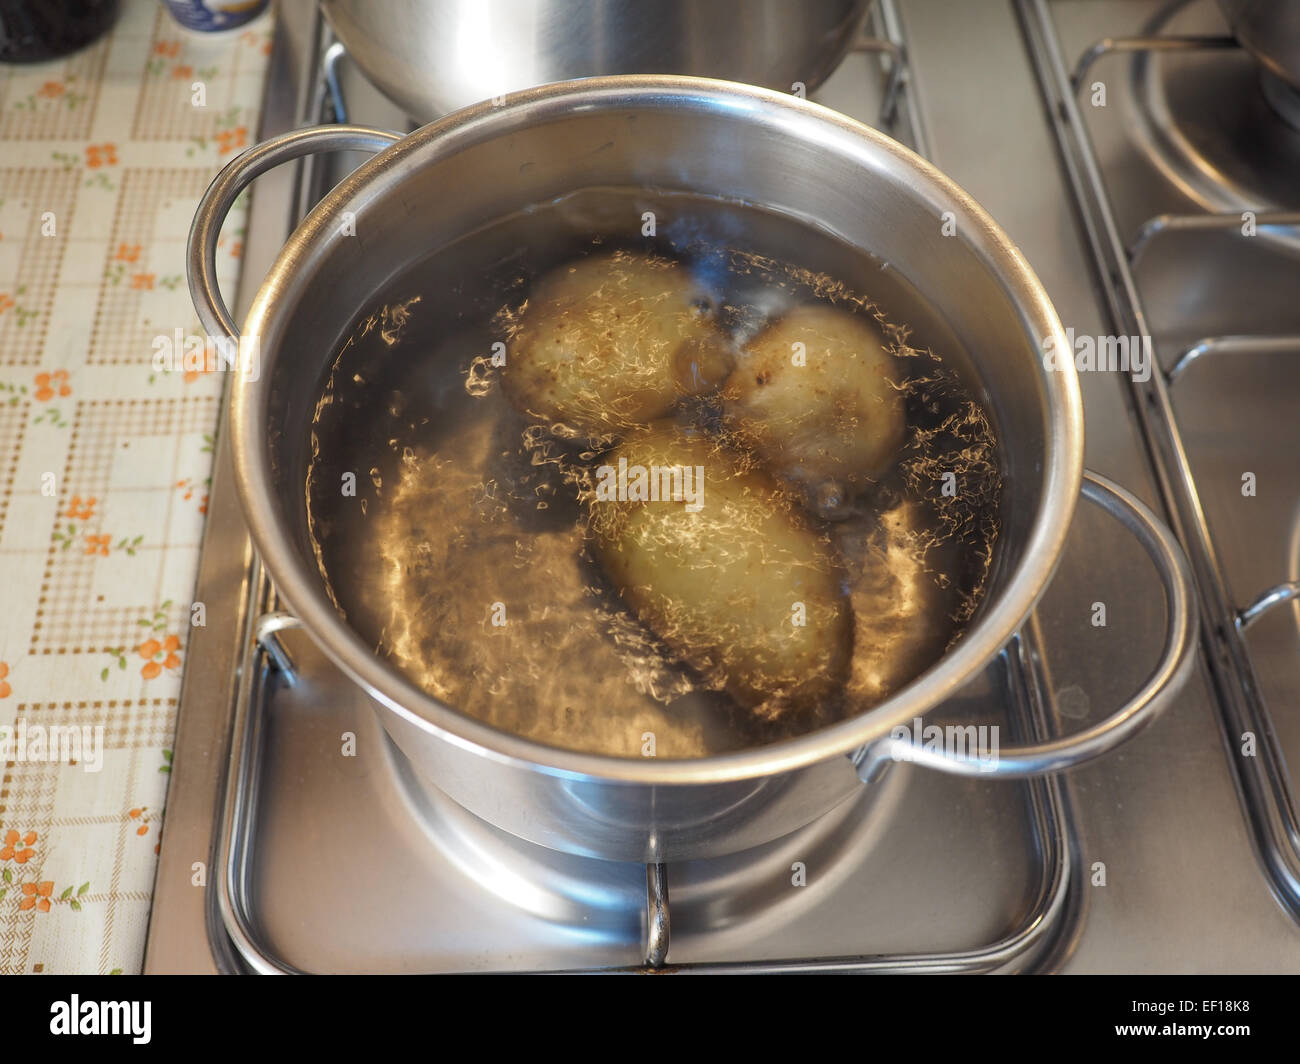 Картошку кидают в кипящую воду. Кастрюля с картошкой на плите. Картошка в кастрюле. Картошка в сотейнике на плите. Картофель варящийся на плите.